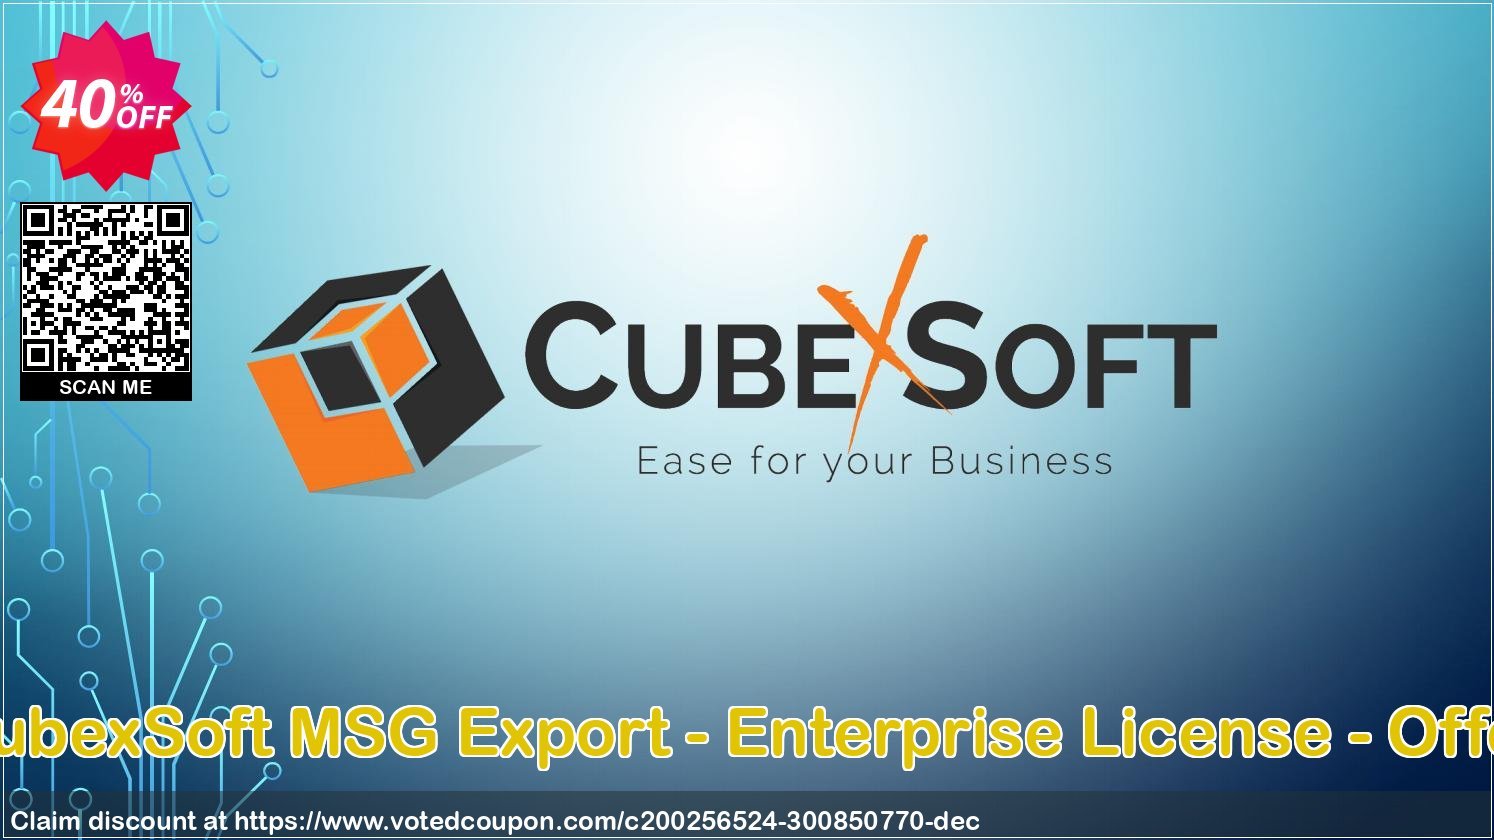 CubexSoft MSG Export - Enterprise Plan - Offer Coupon, discount Coupon code CubexSoft MSG Export - Enterprise License - Offer. Promotion: CubexSoft MSG Export - Enterprise License - Offer offer from CubexSoft Tools Pvt. Ltd.